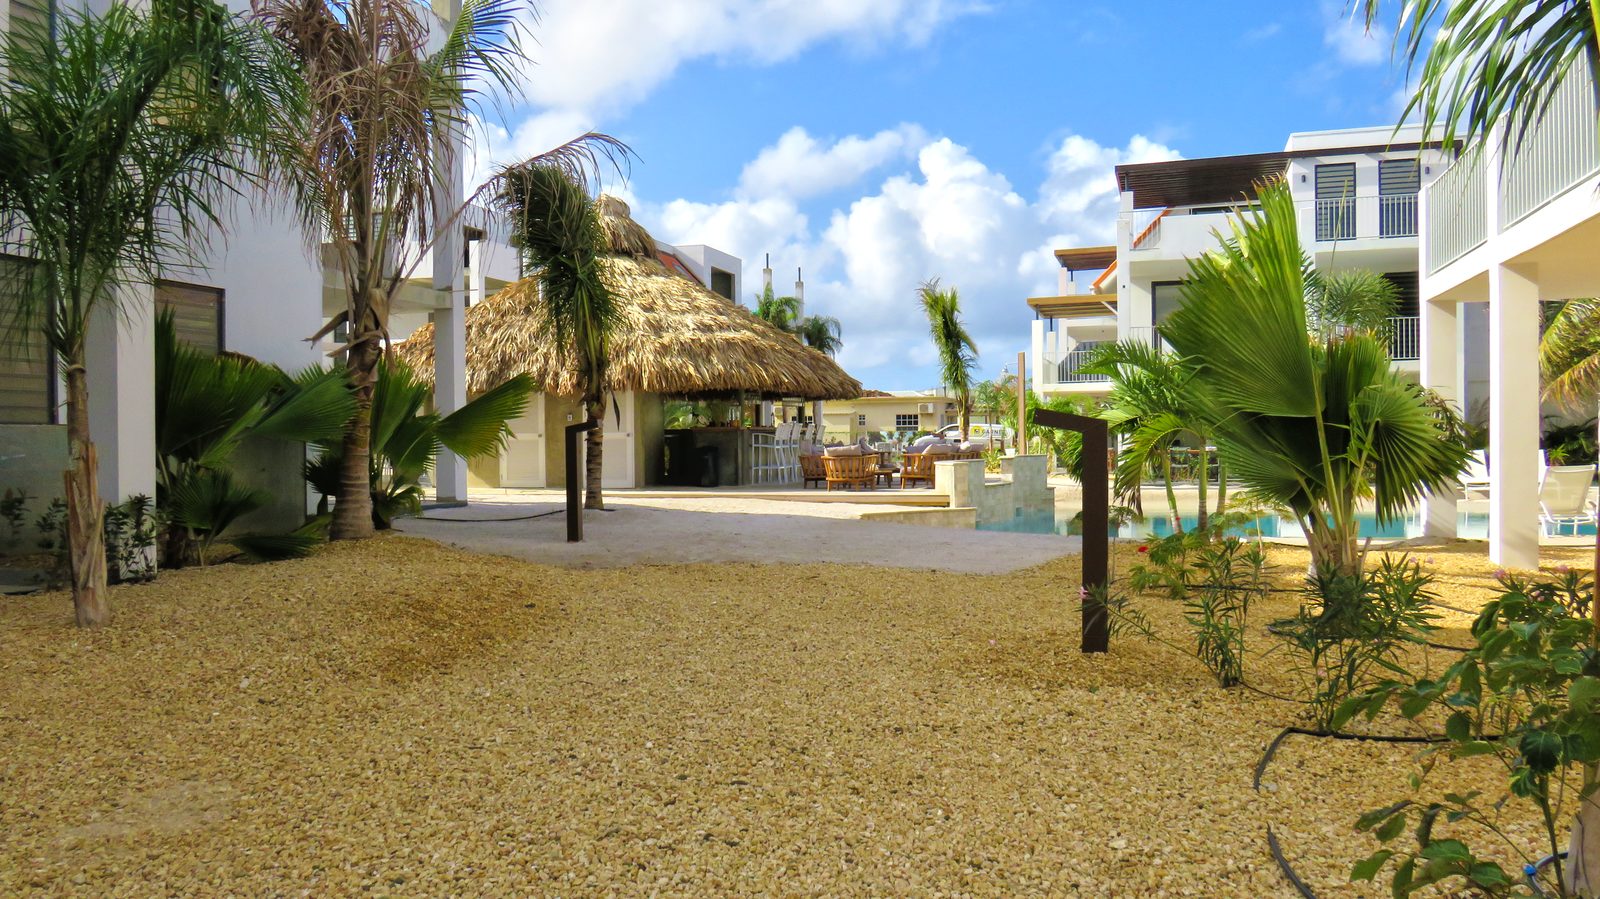 Resort Bonaire est l'un des meilleurs lieux pour séjourner à Bonaire. C'est un établissement parfait pour les couples et les familles qui veulent se détendre et passer un bon moment.